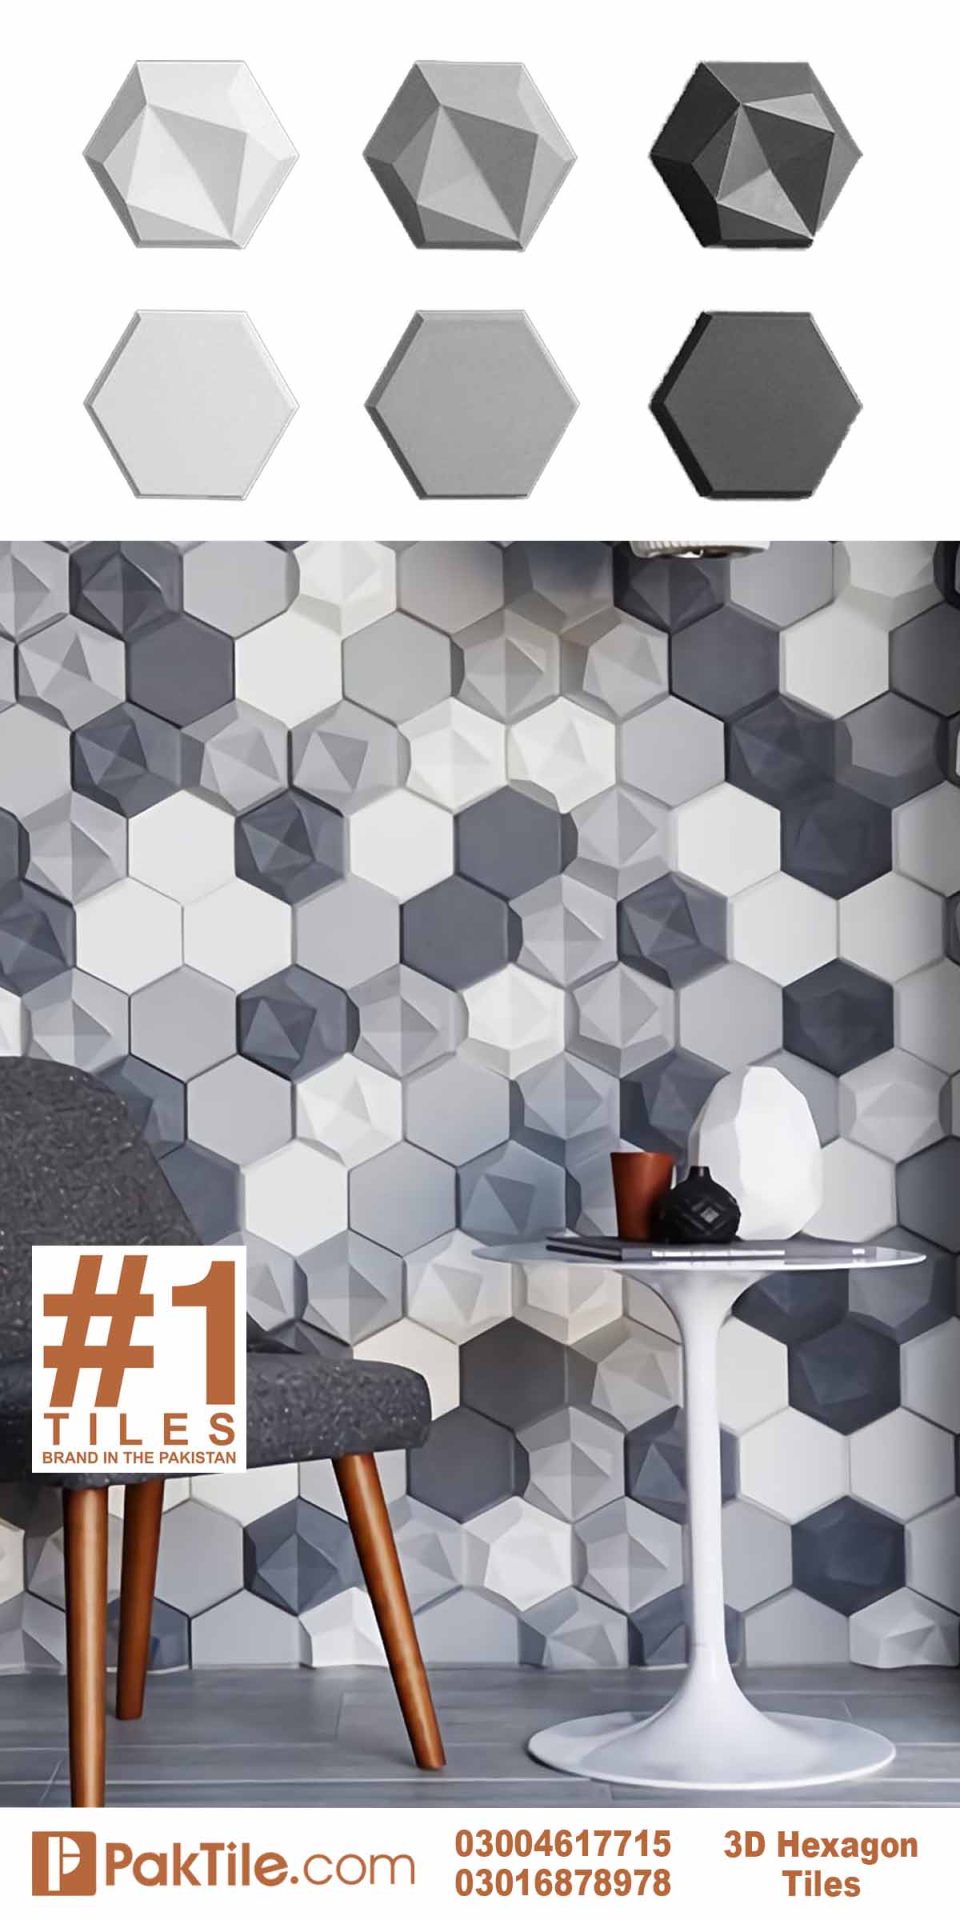 Hexagon 3D Tiles Design in Pakistan